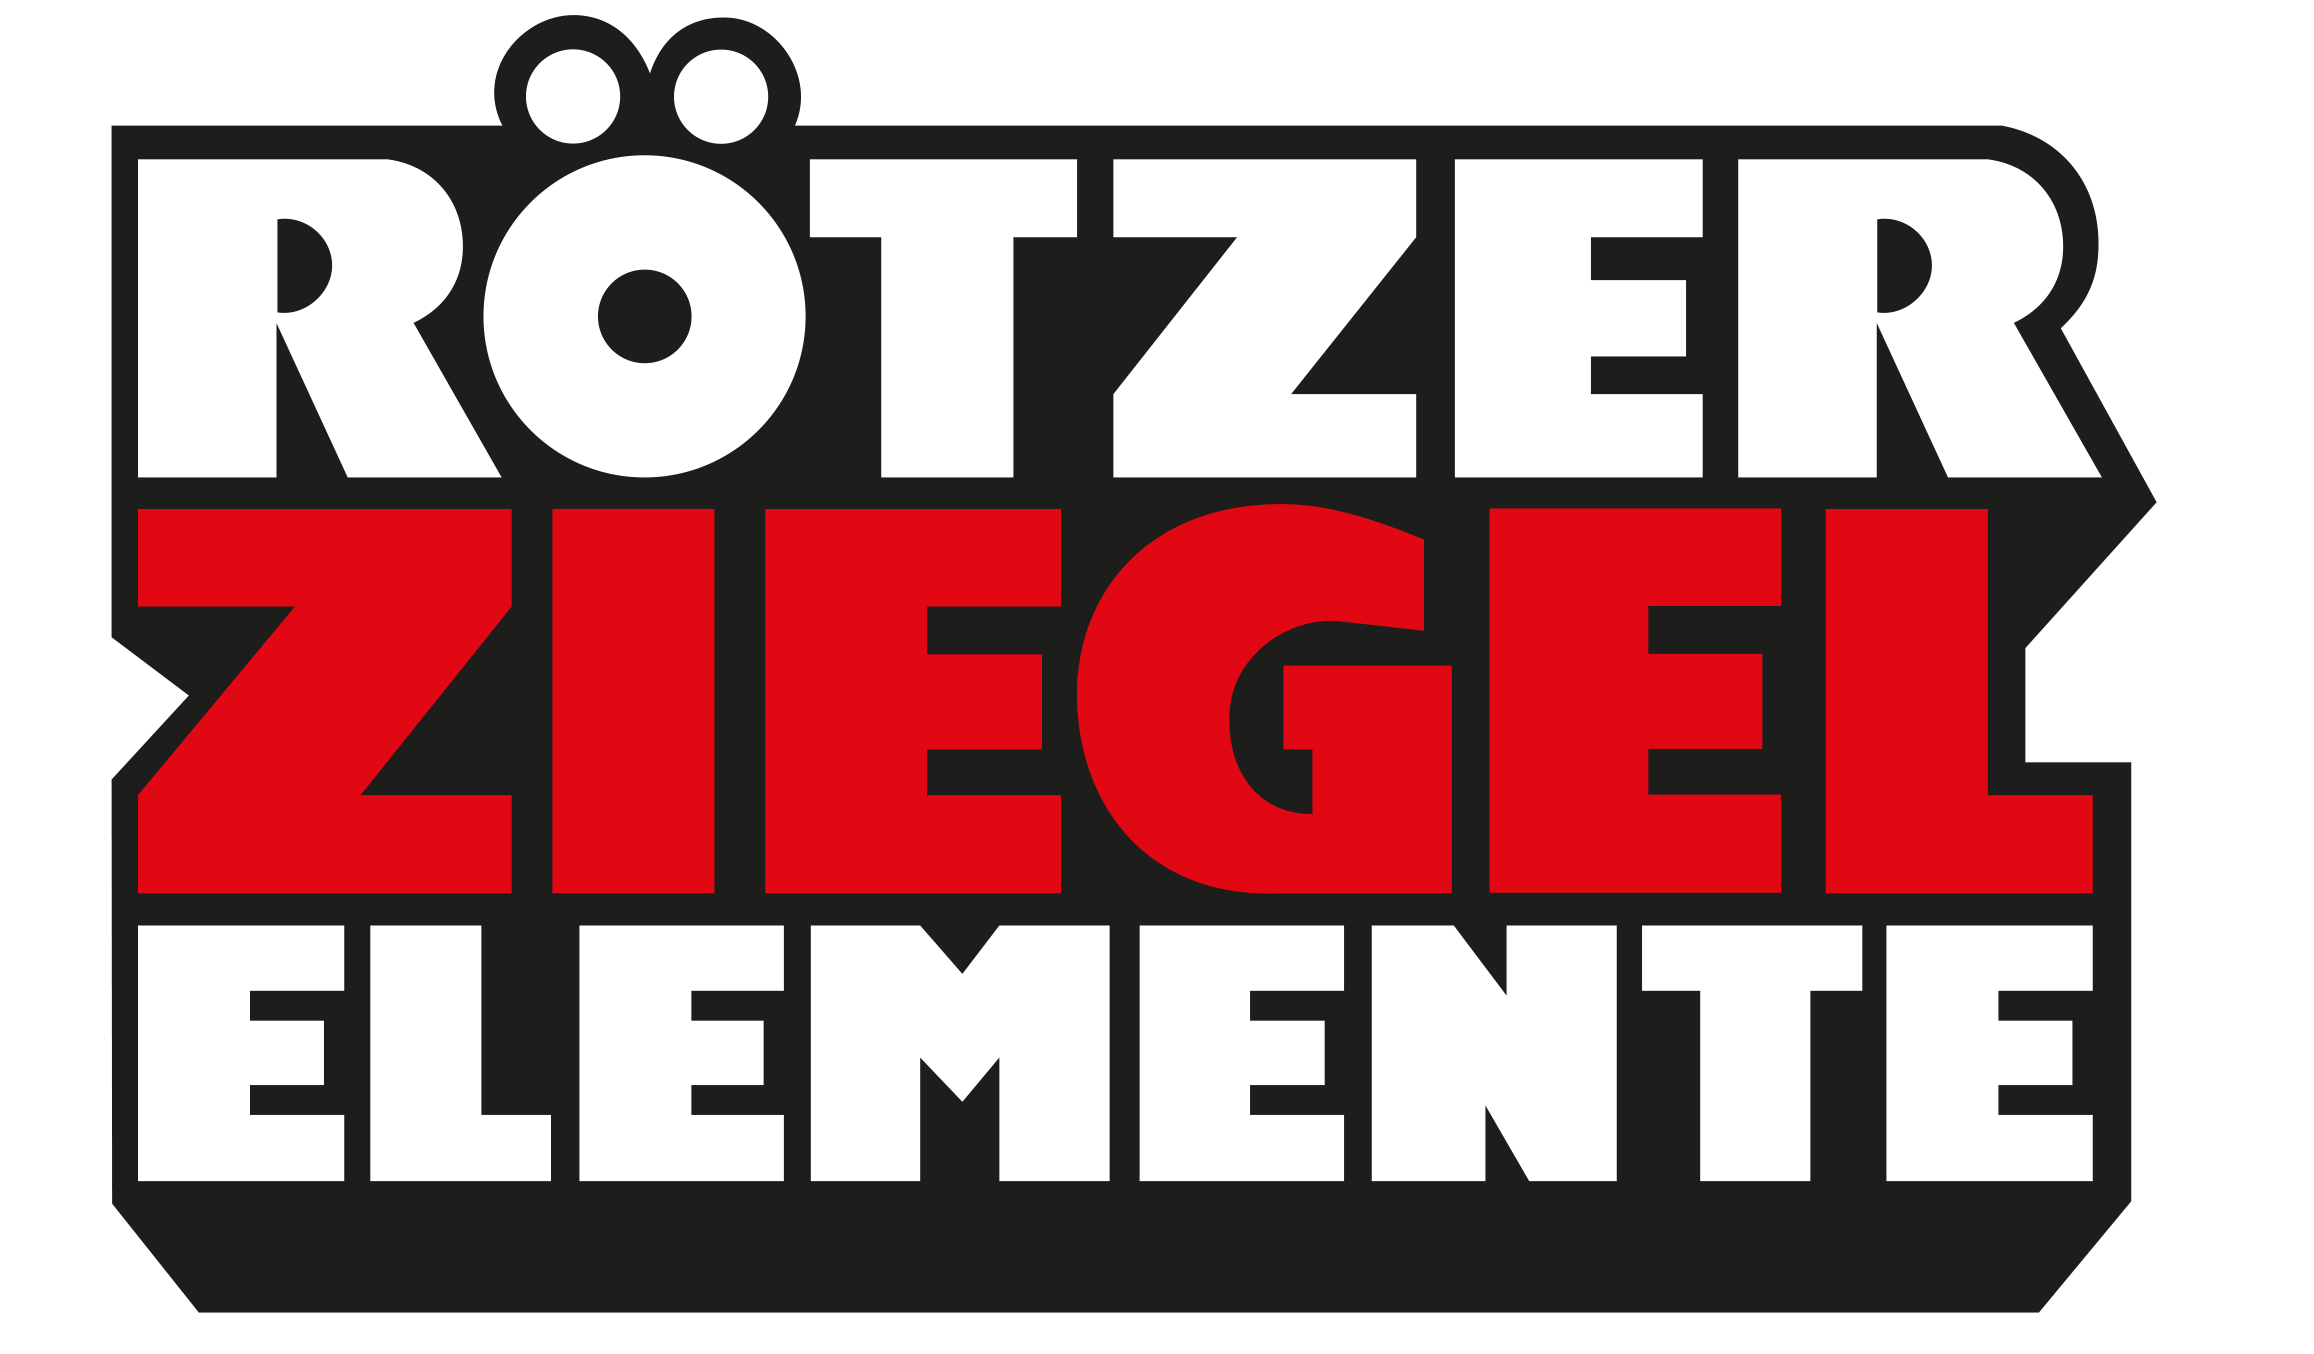 rötzner-ziegel-elemente-logo